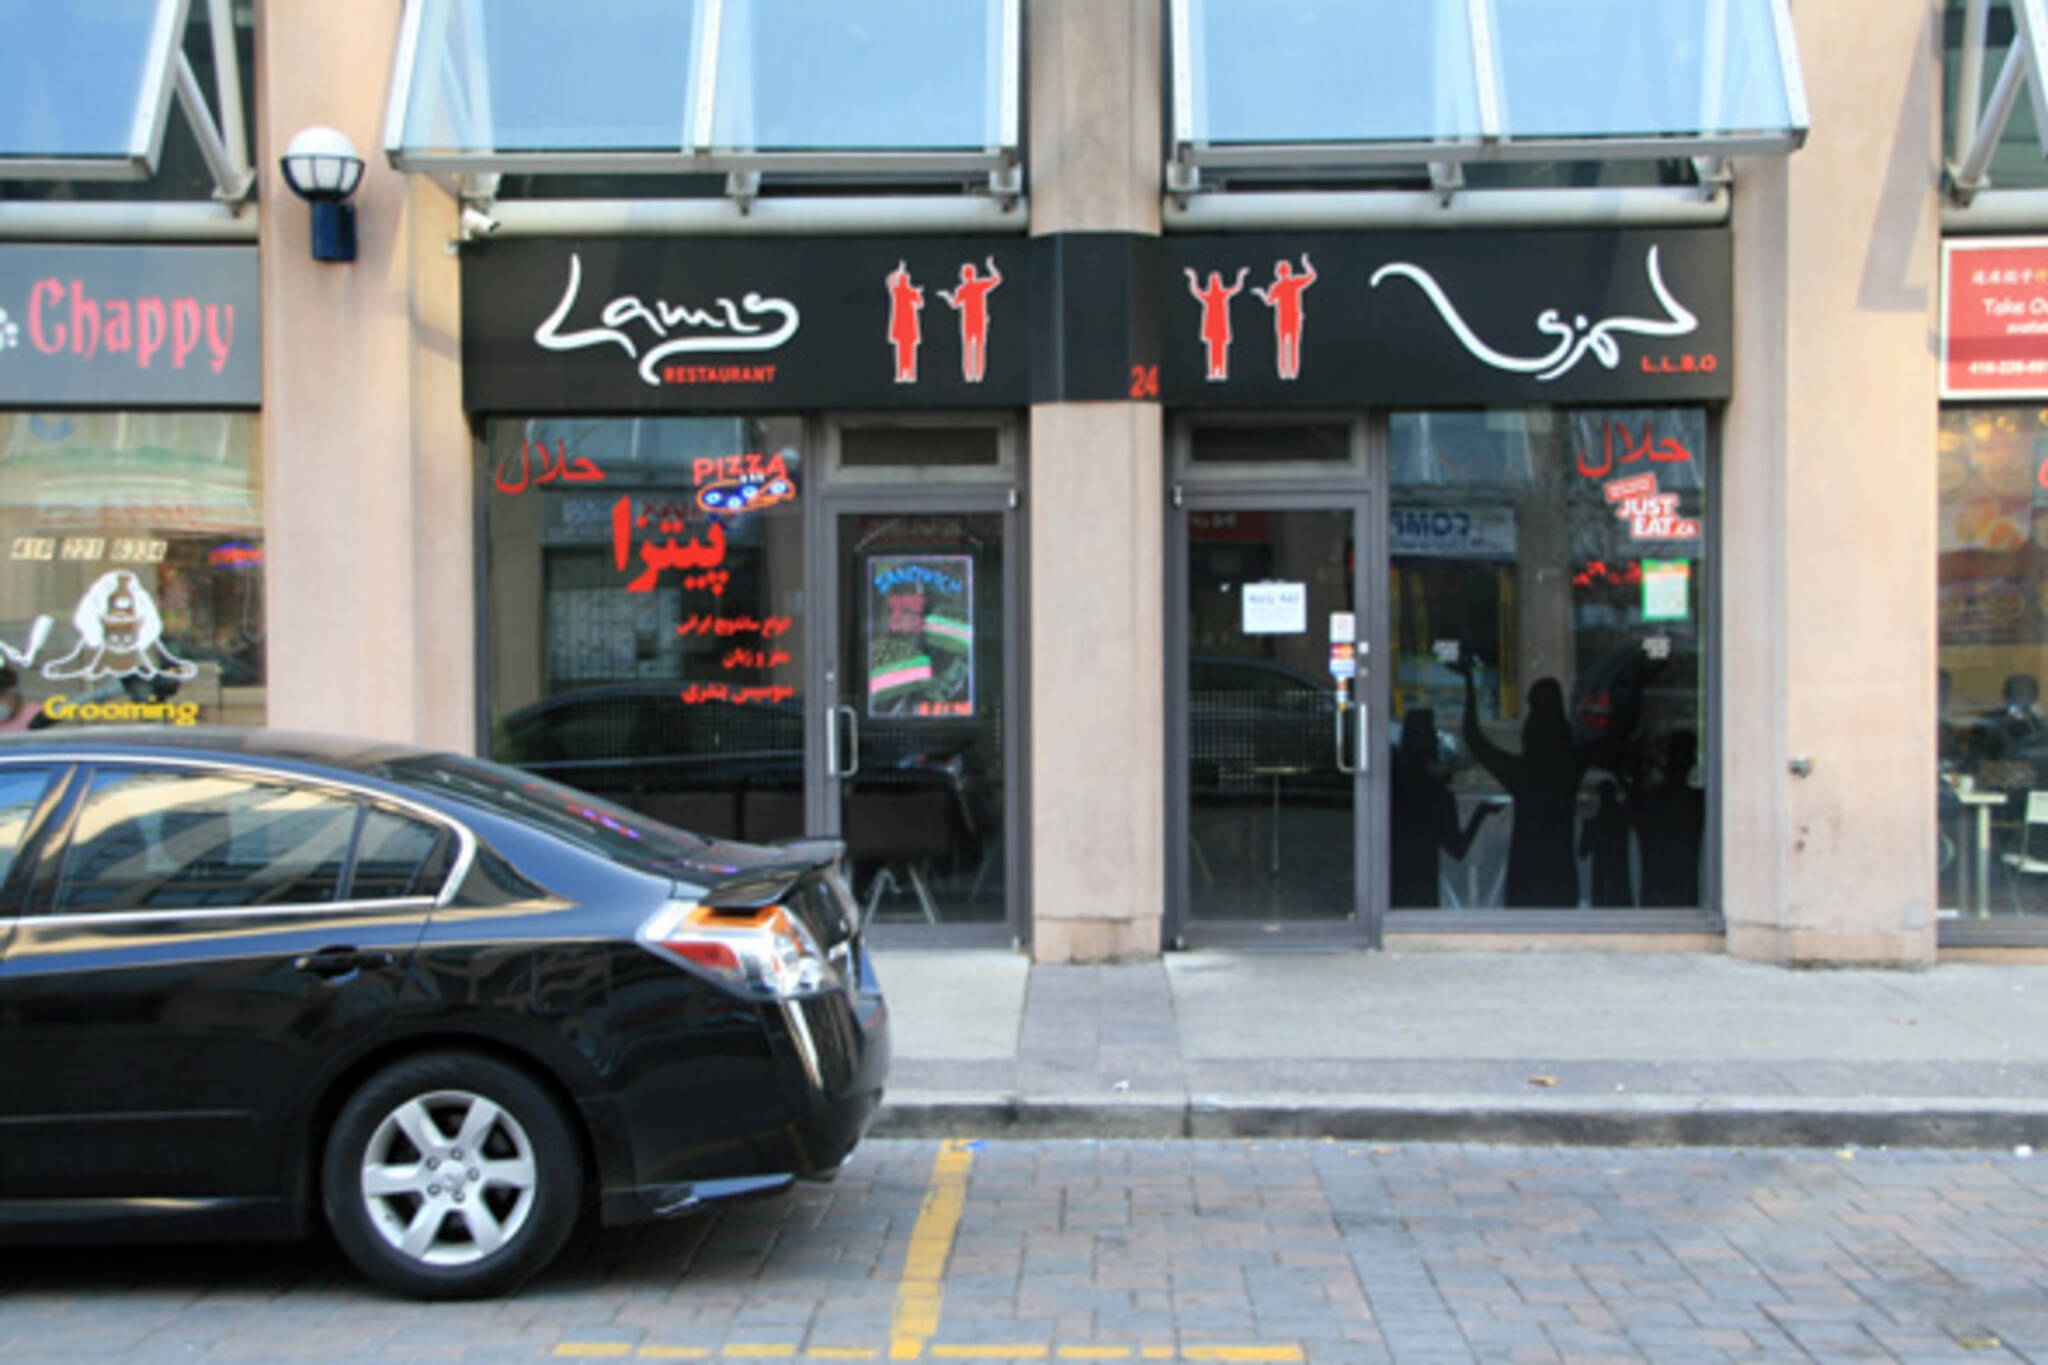 Lamis Restaurant